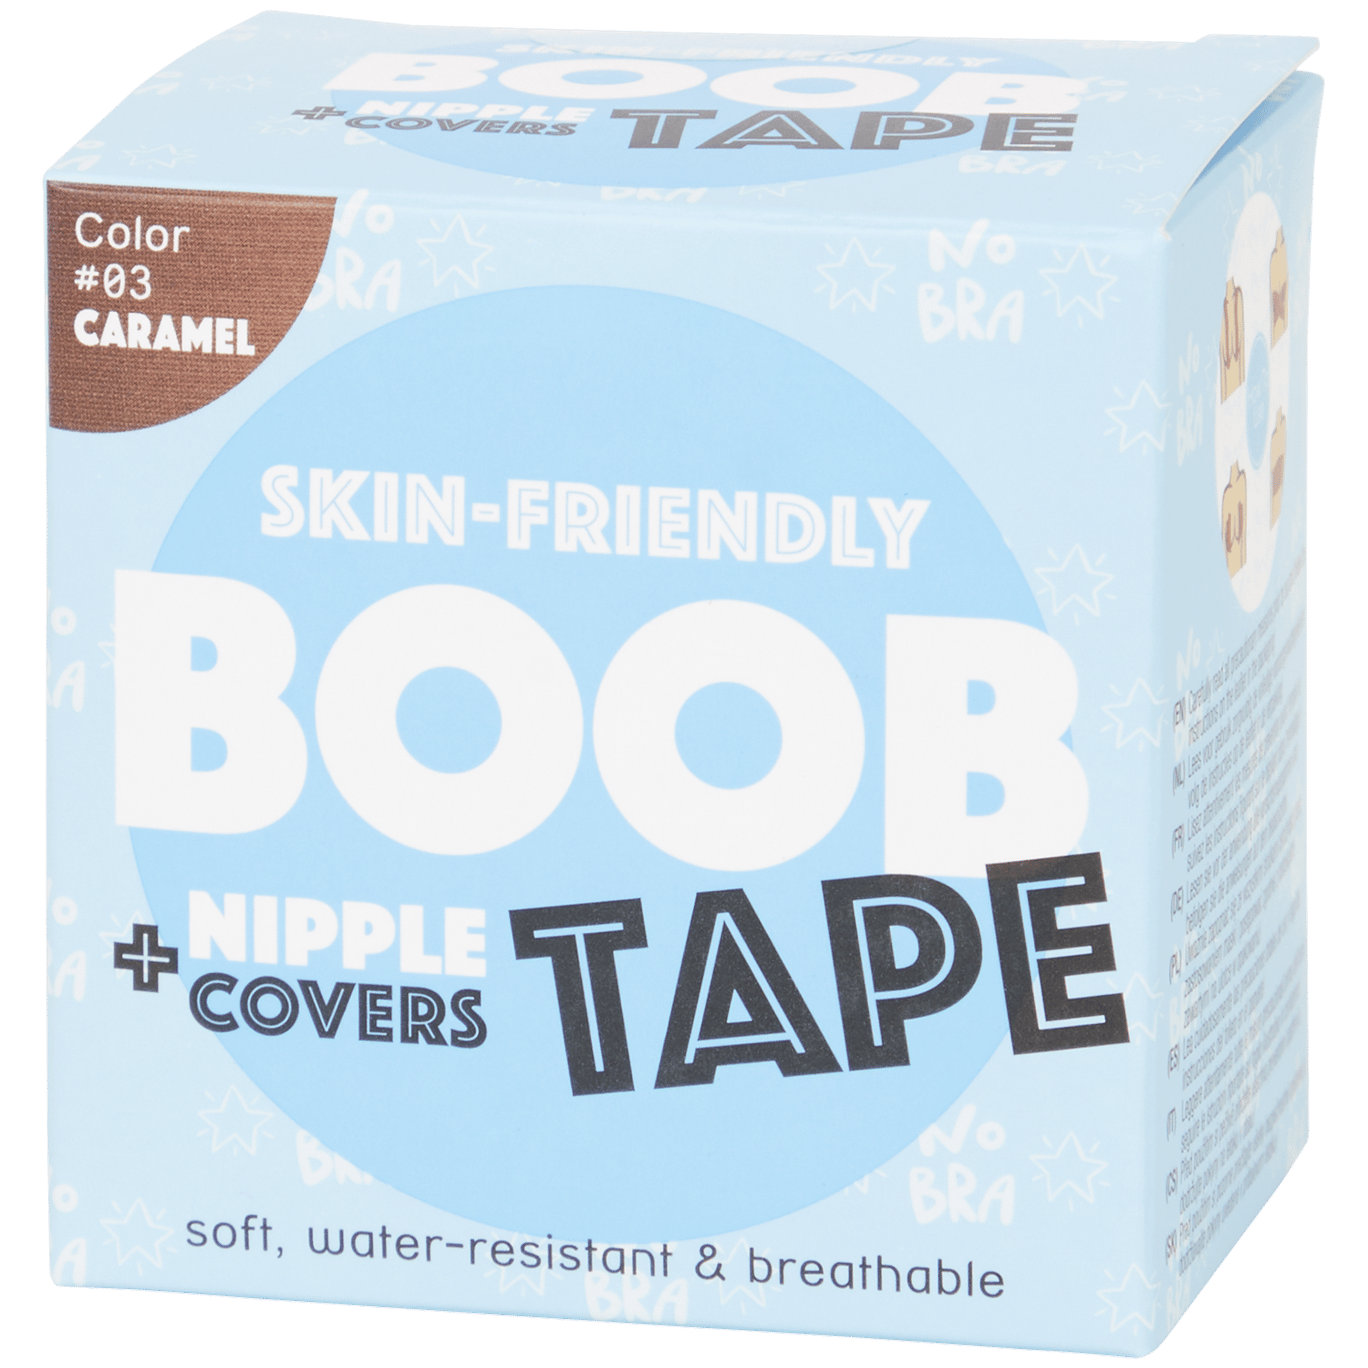 Boob tape + tepelbeschermers